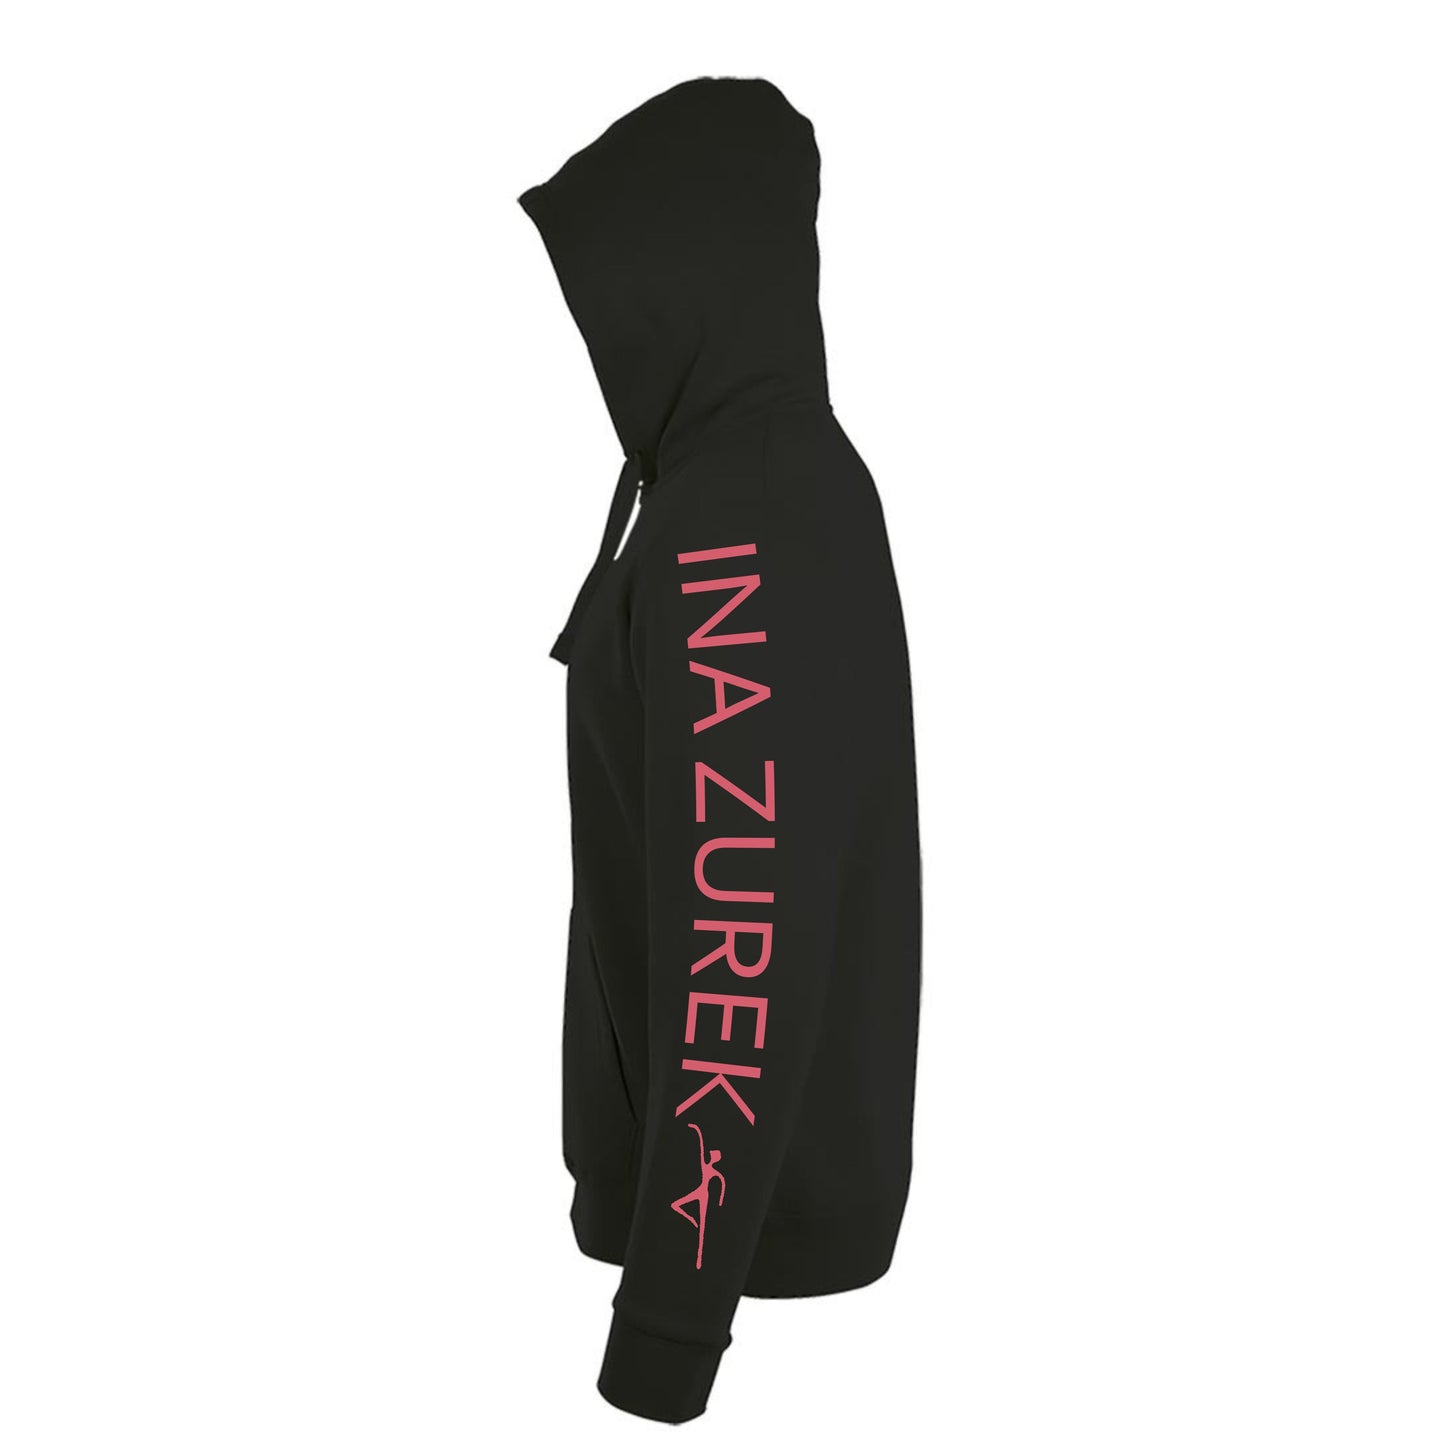 Sweatshirt-Jacke  "Ballettschule" schwarz mit rosanem Druck